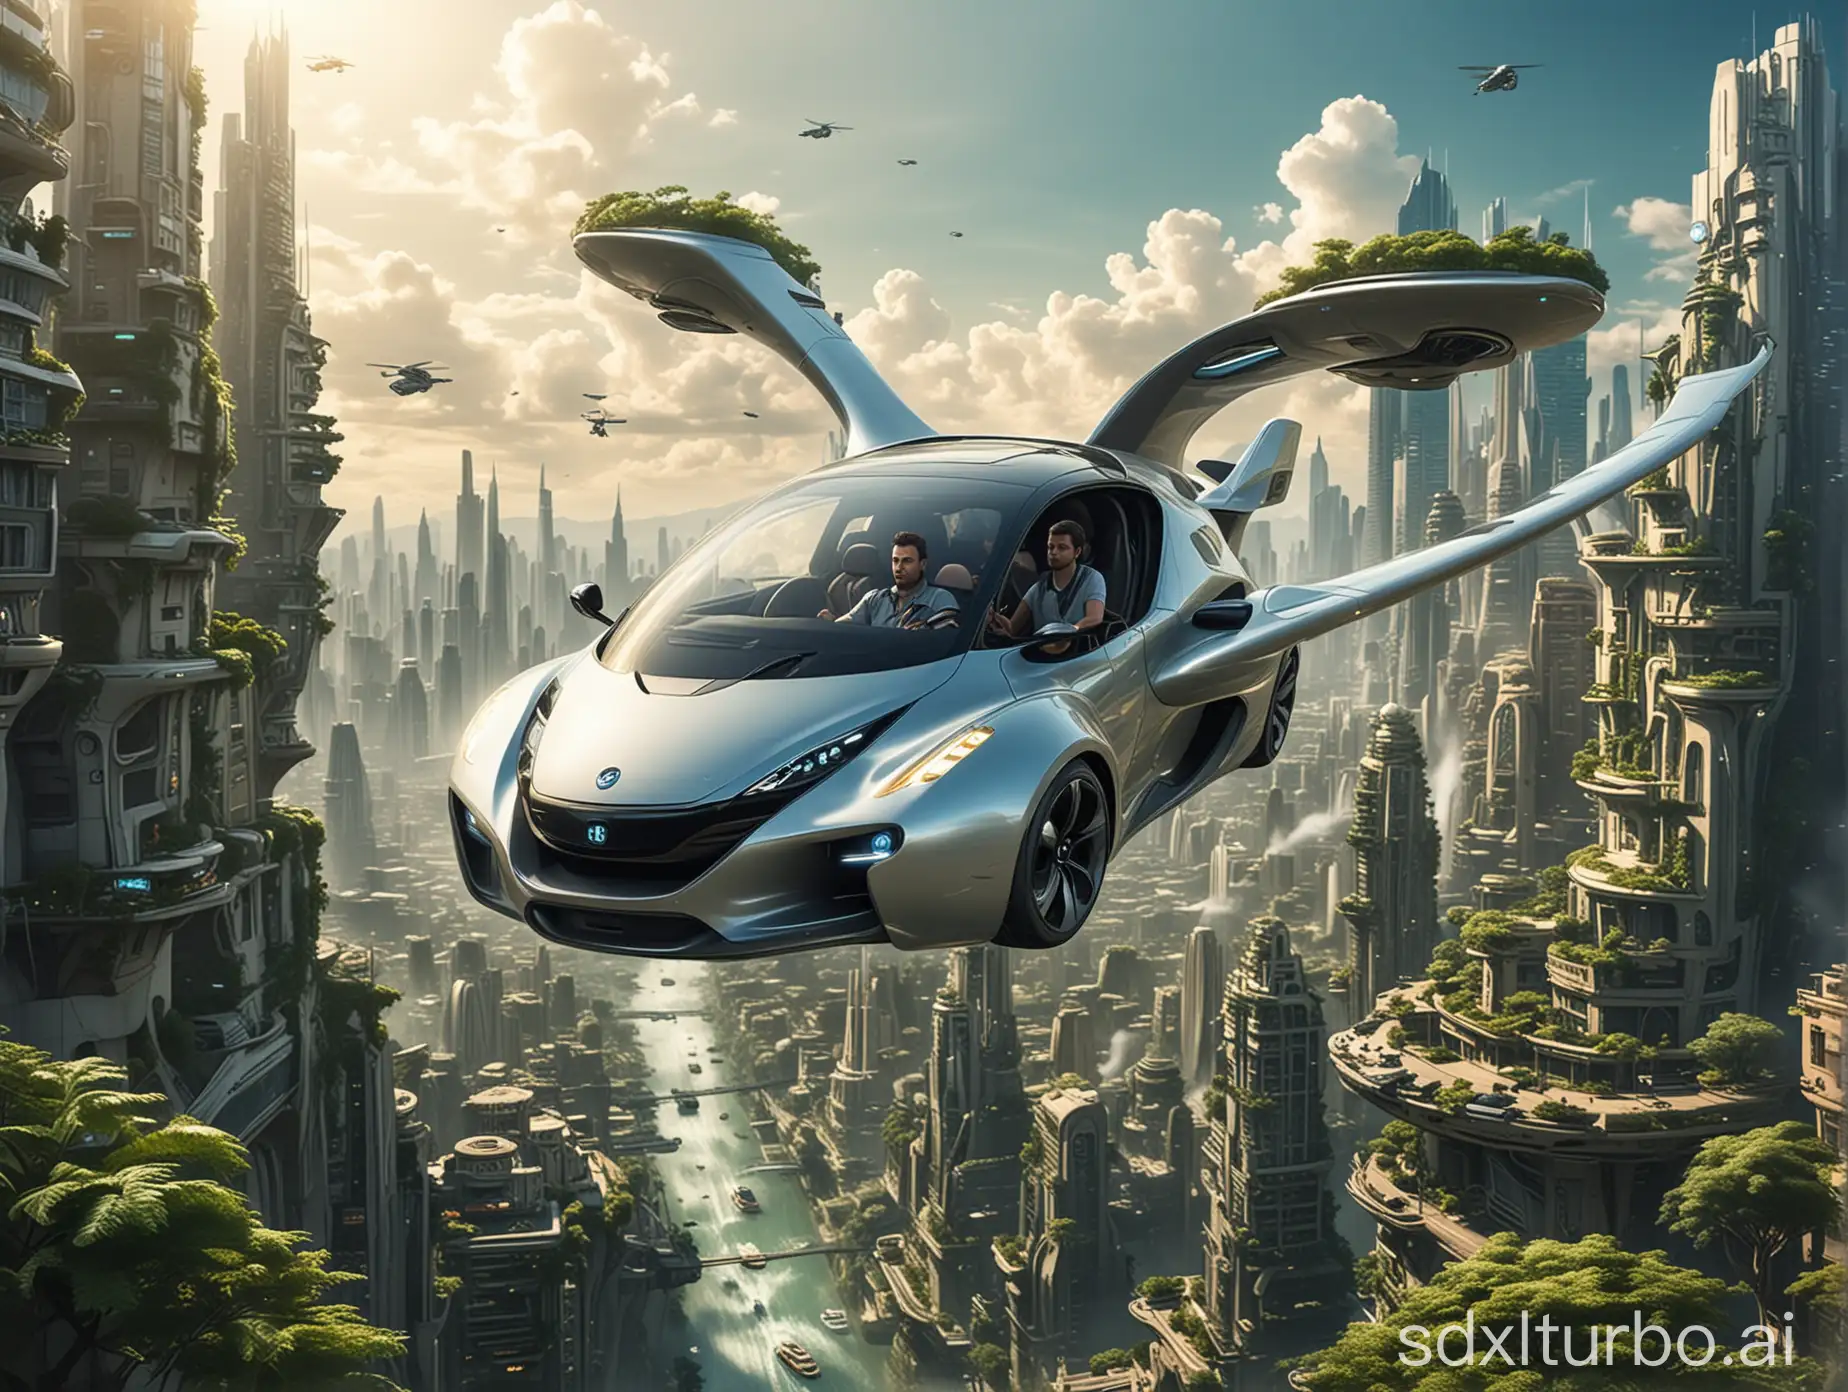 生成一个在未来城市中 男人下班回家坐在飞行汽车穿梭在未来科技城市的上空中 城市要充满科技感有建筑商有整齐的植被 要有科技感科幻感 多一些飞行汽车的内部细节